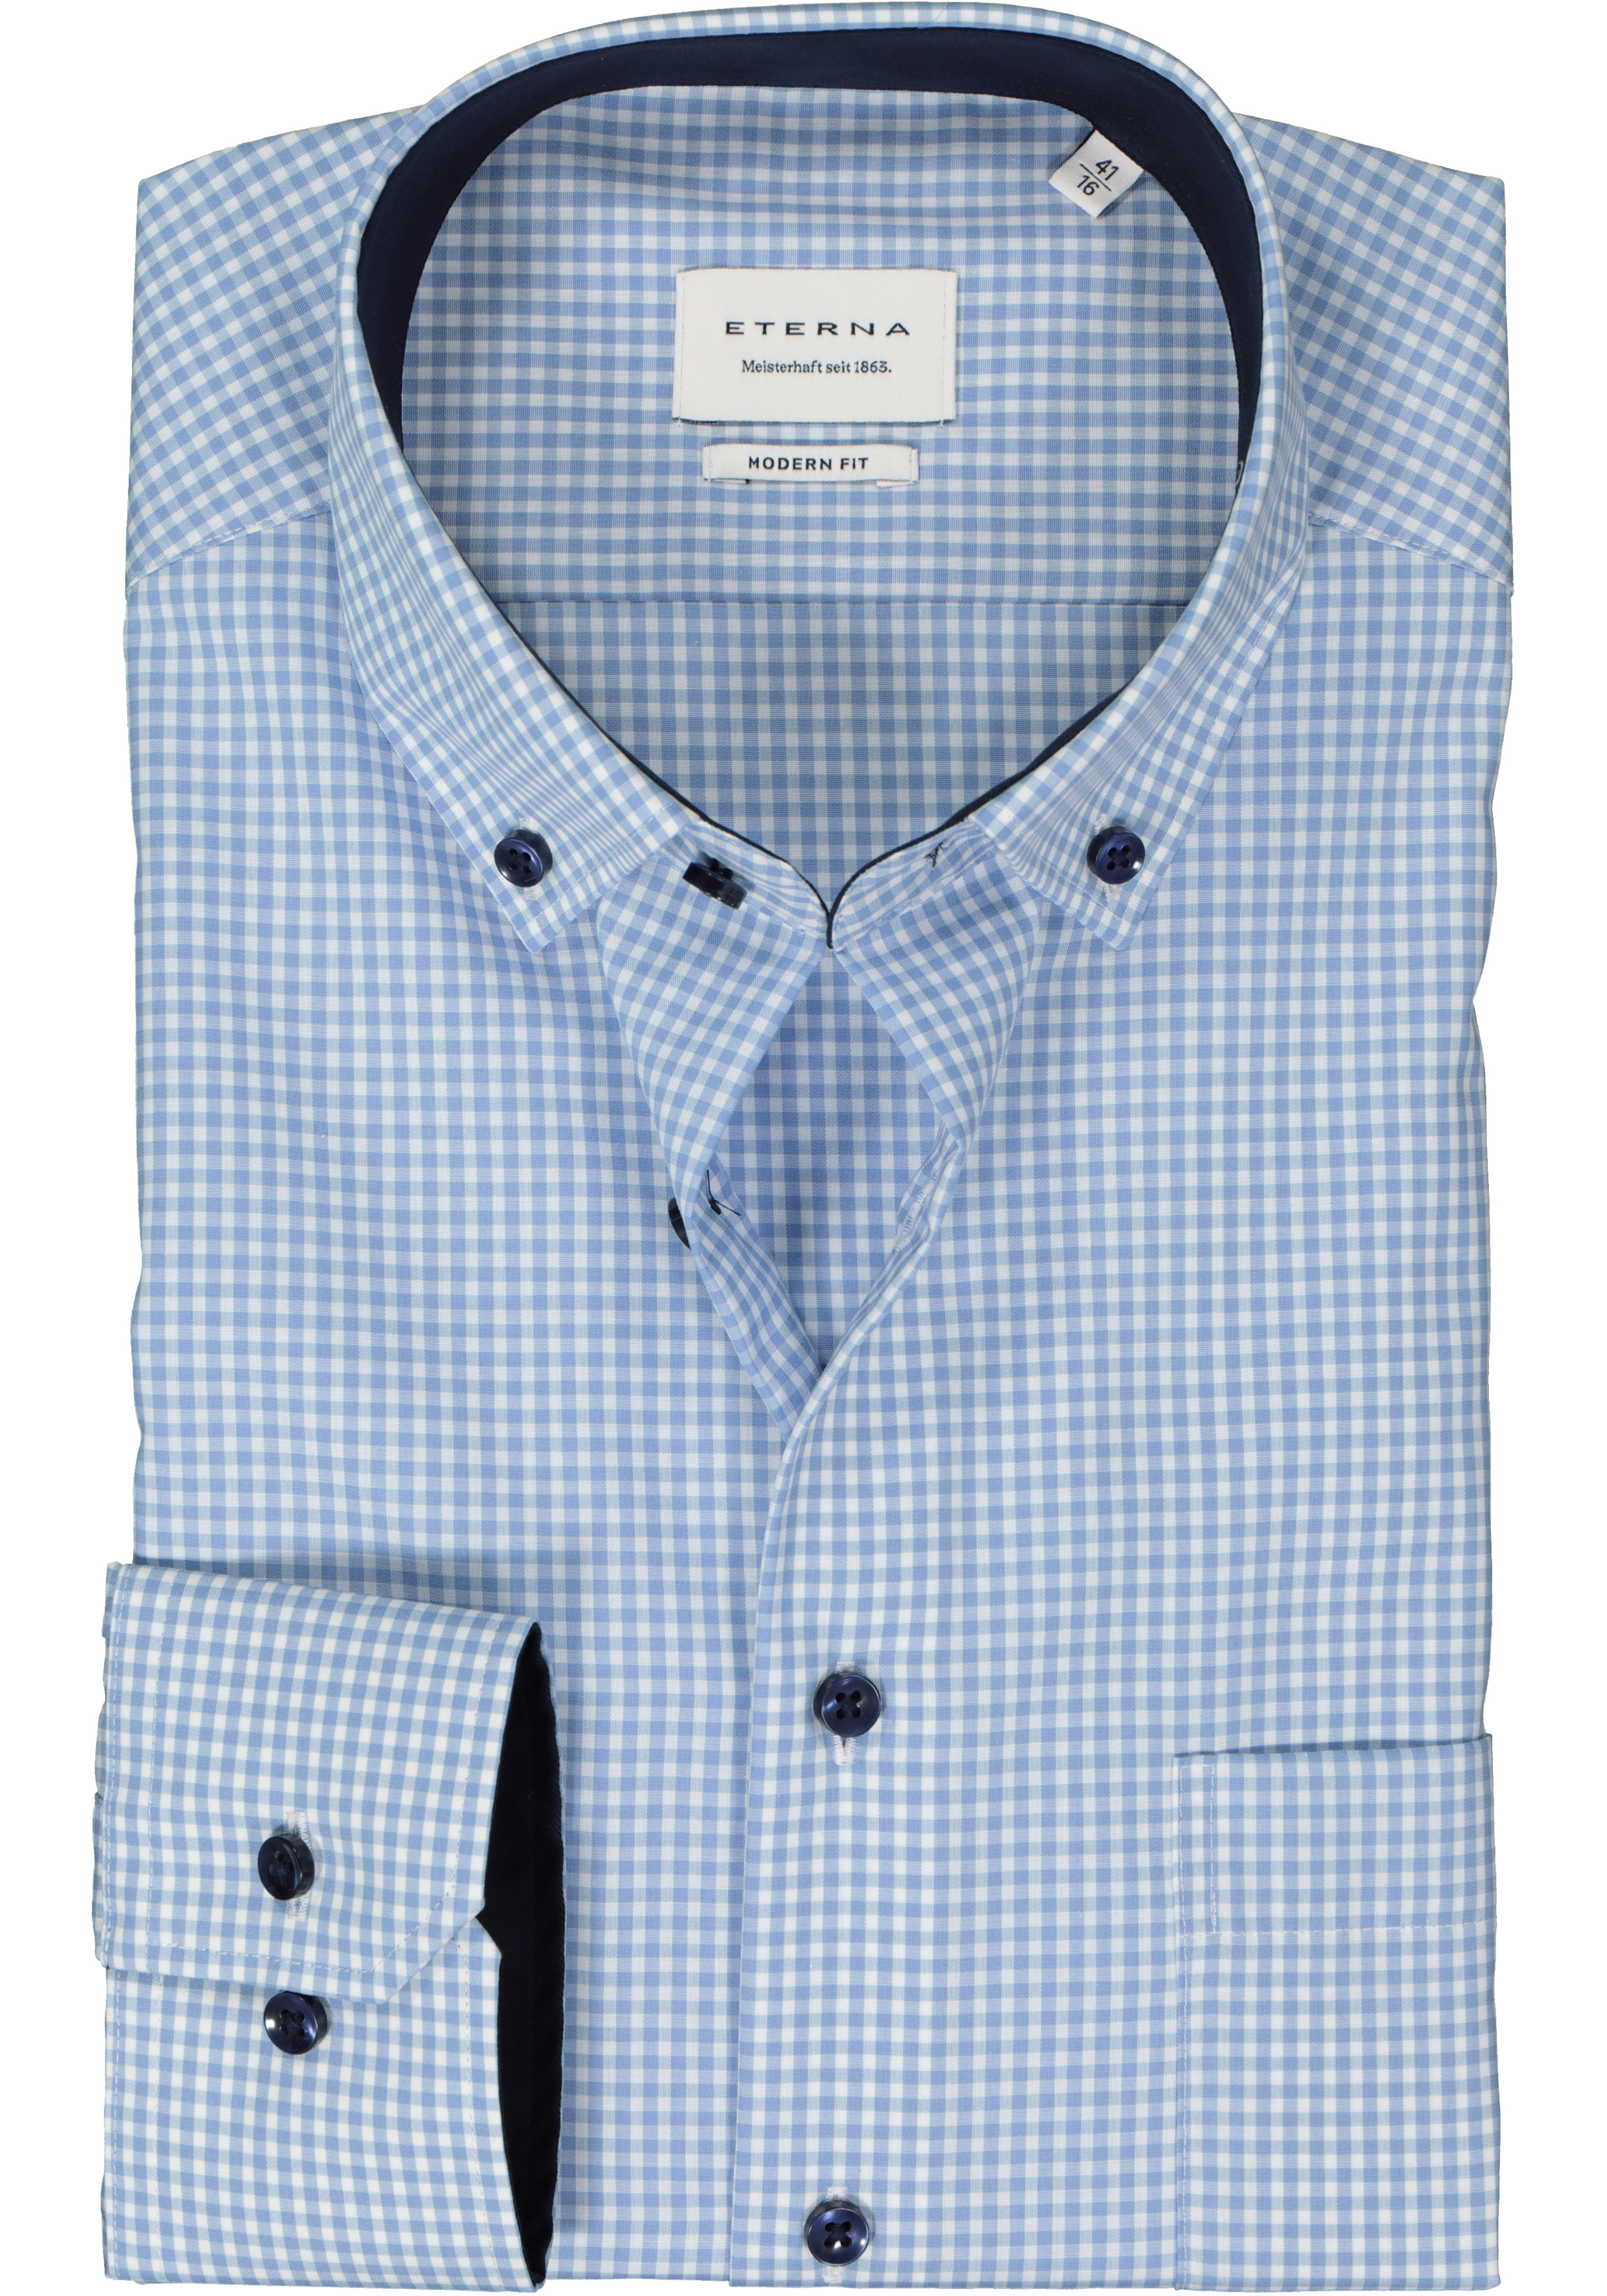 ETERNA modern fit overhemd, popeline, lichtblauw geruit (contrast)